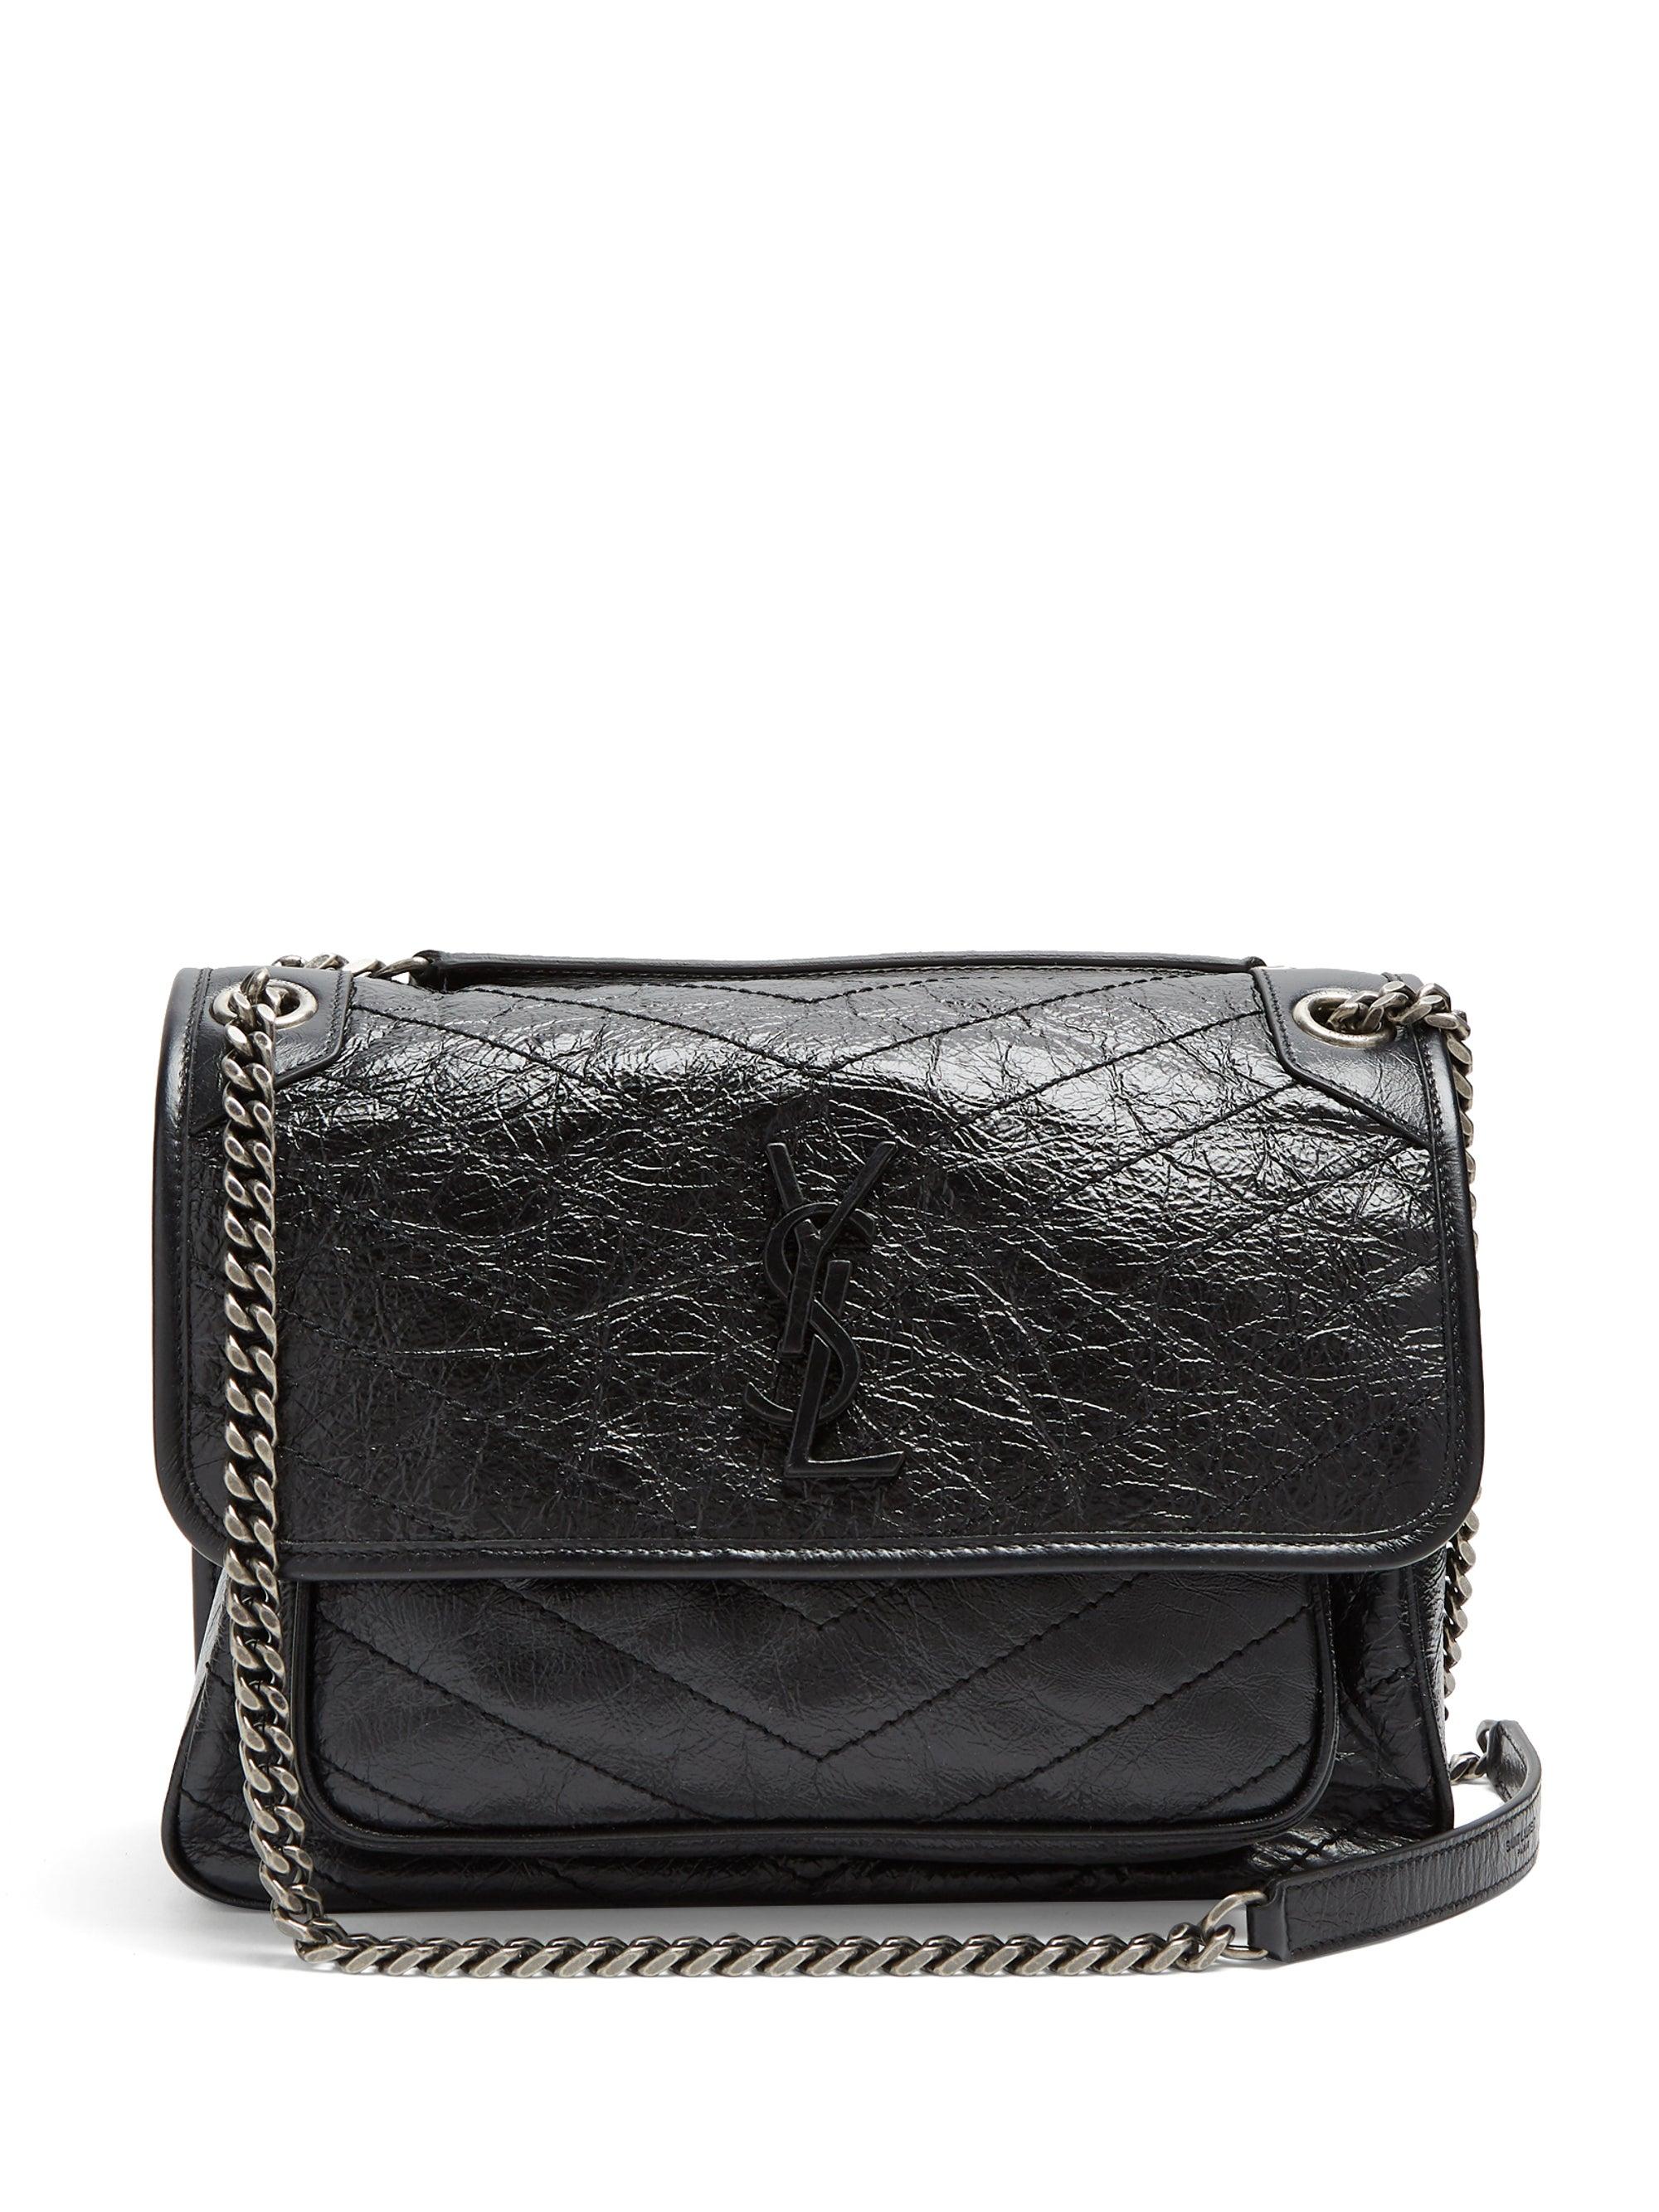 Saint Laurent Niki Medium Quilted-leather Bag in Black | Lyst Canada